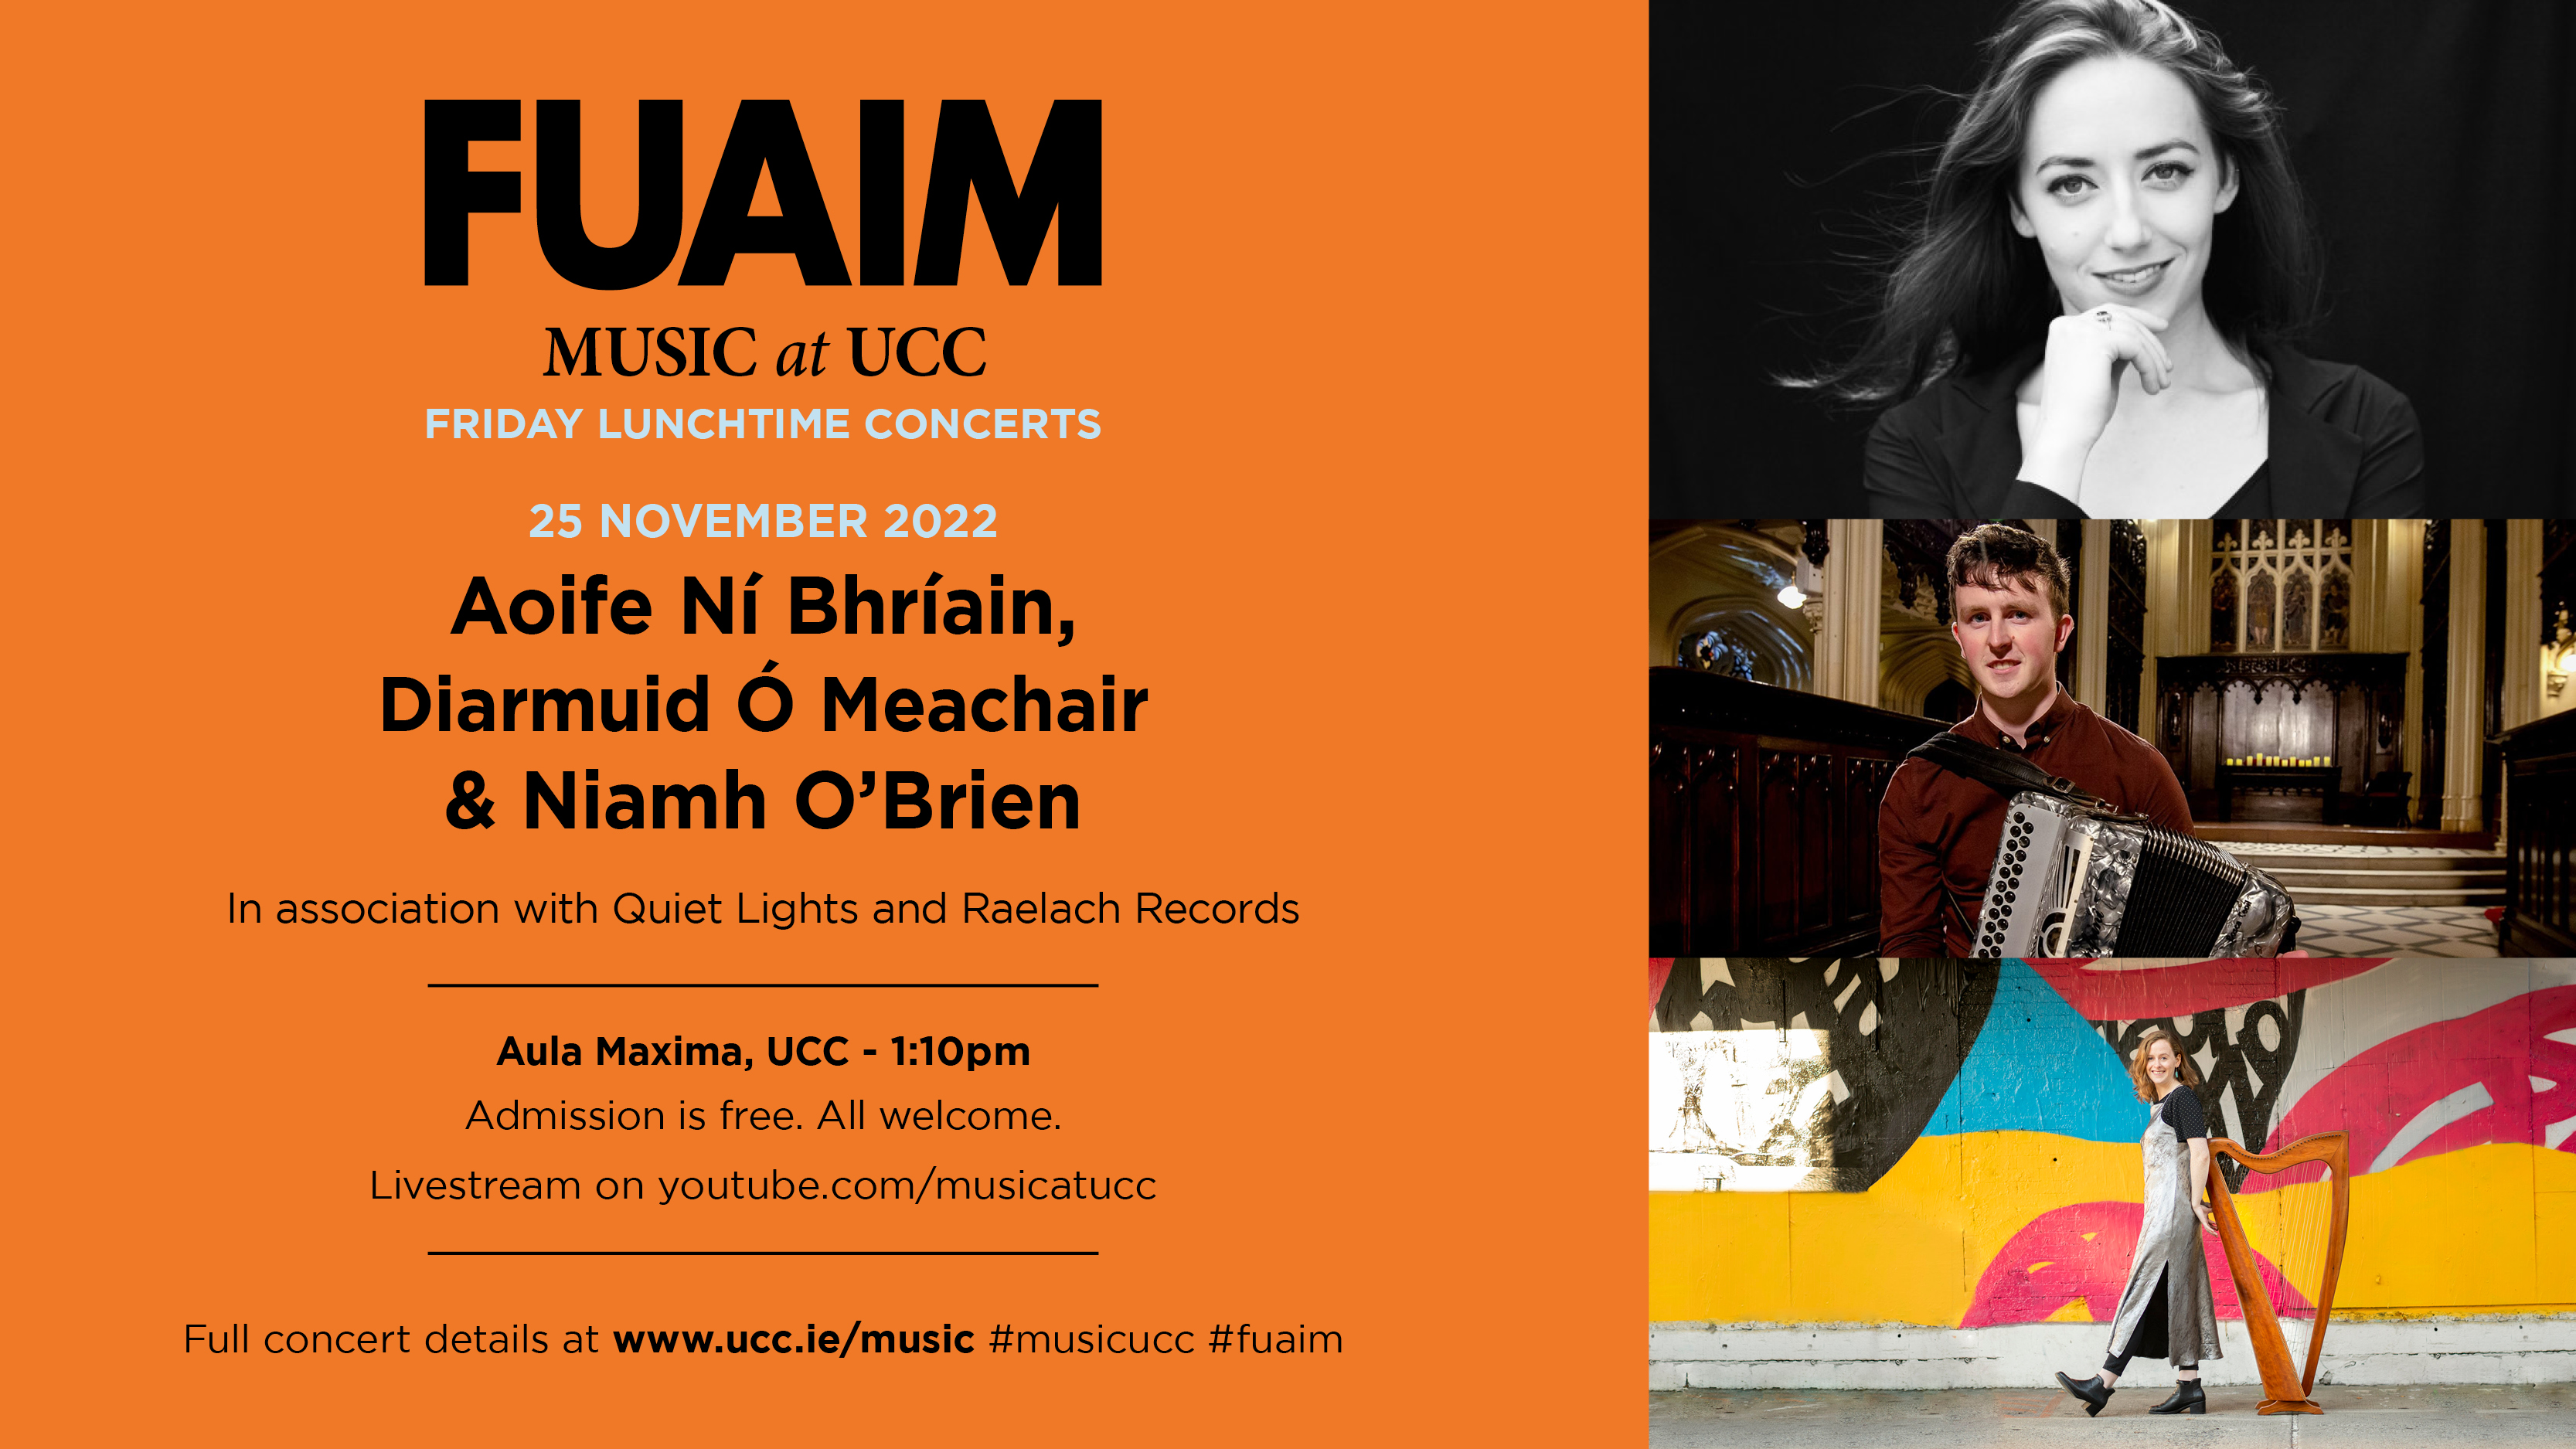 FUAIM Concert: Aoife Ní Bhríain, Diarmuid Ó Meachair & Niamh O'Brien,  25th November, 1.10pm, Aula Maxima